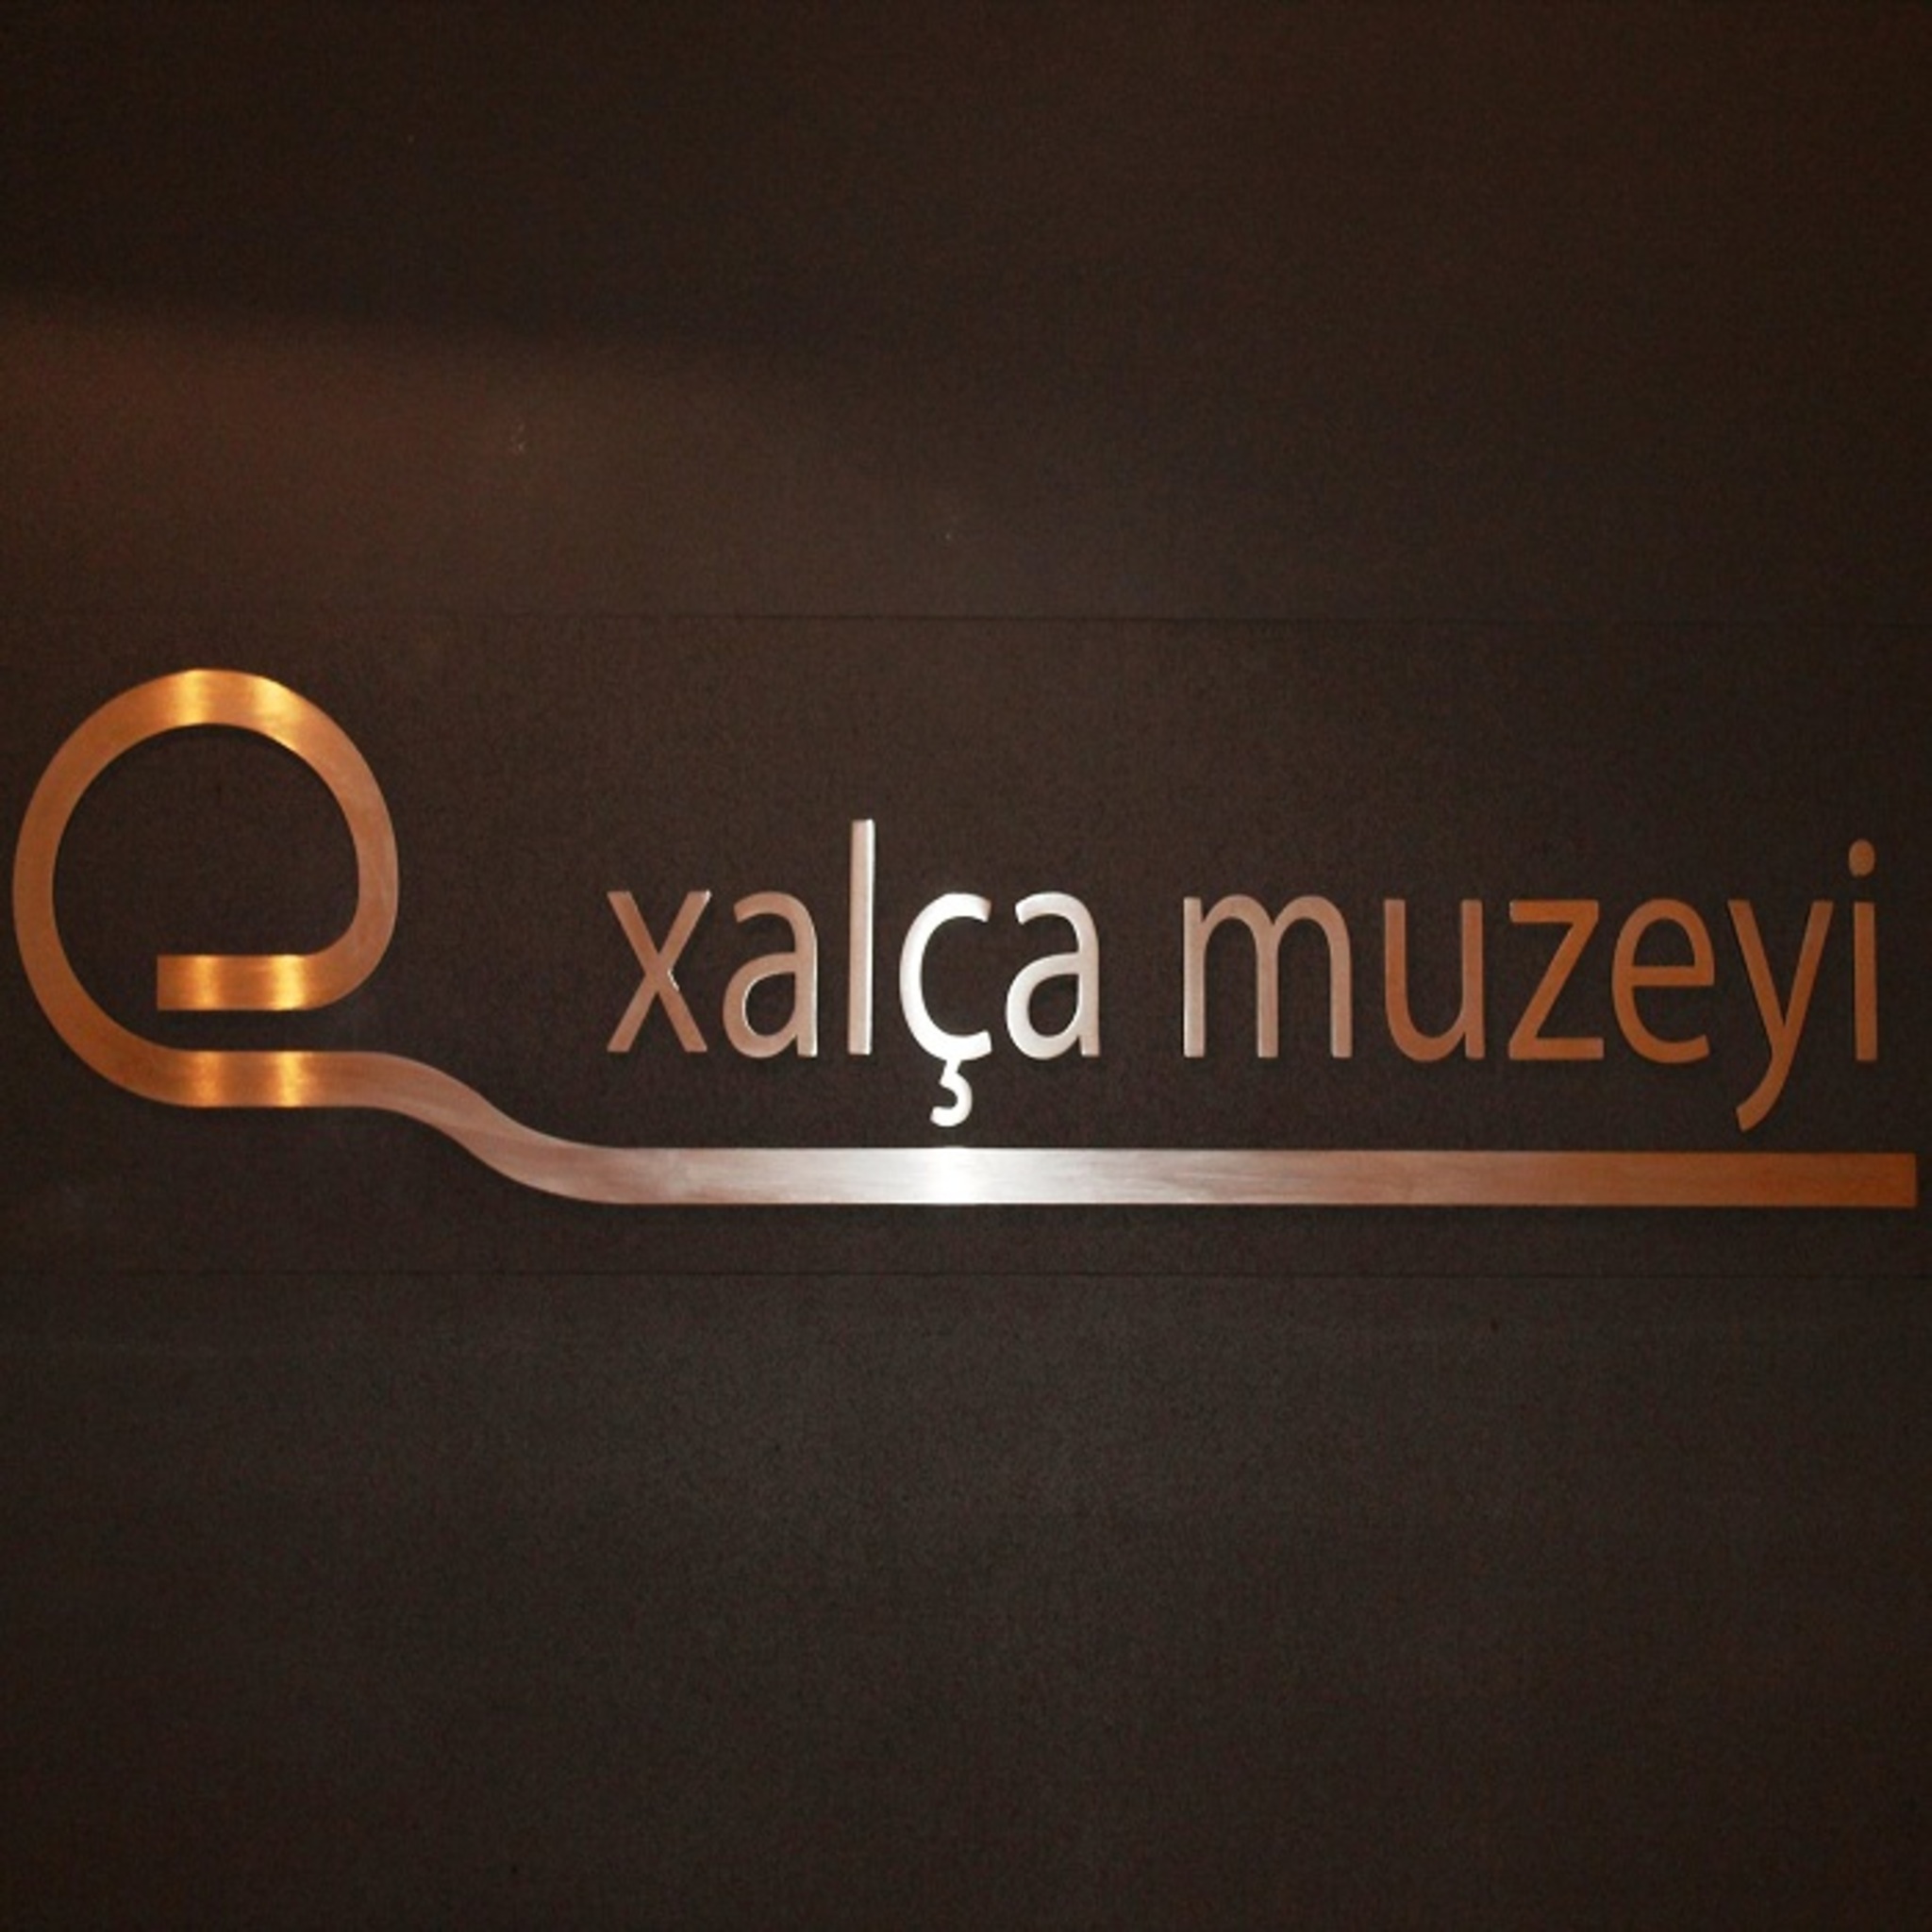 The Azerbaijani Museum of Carpet